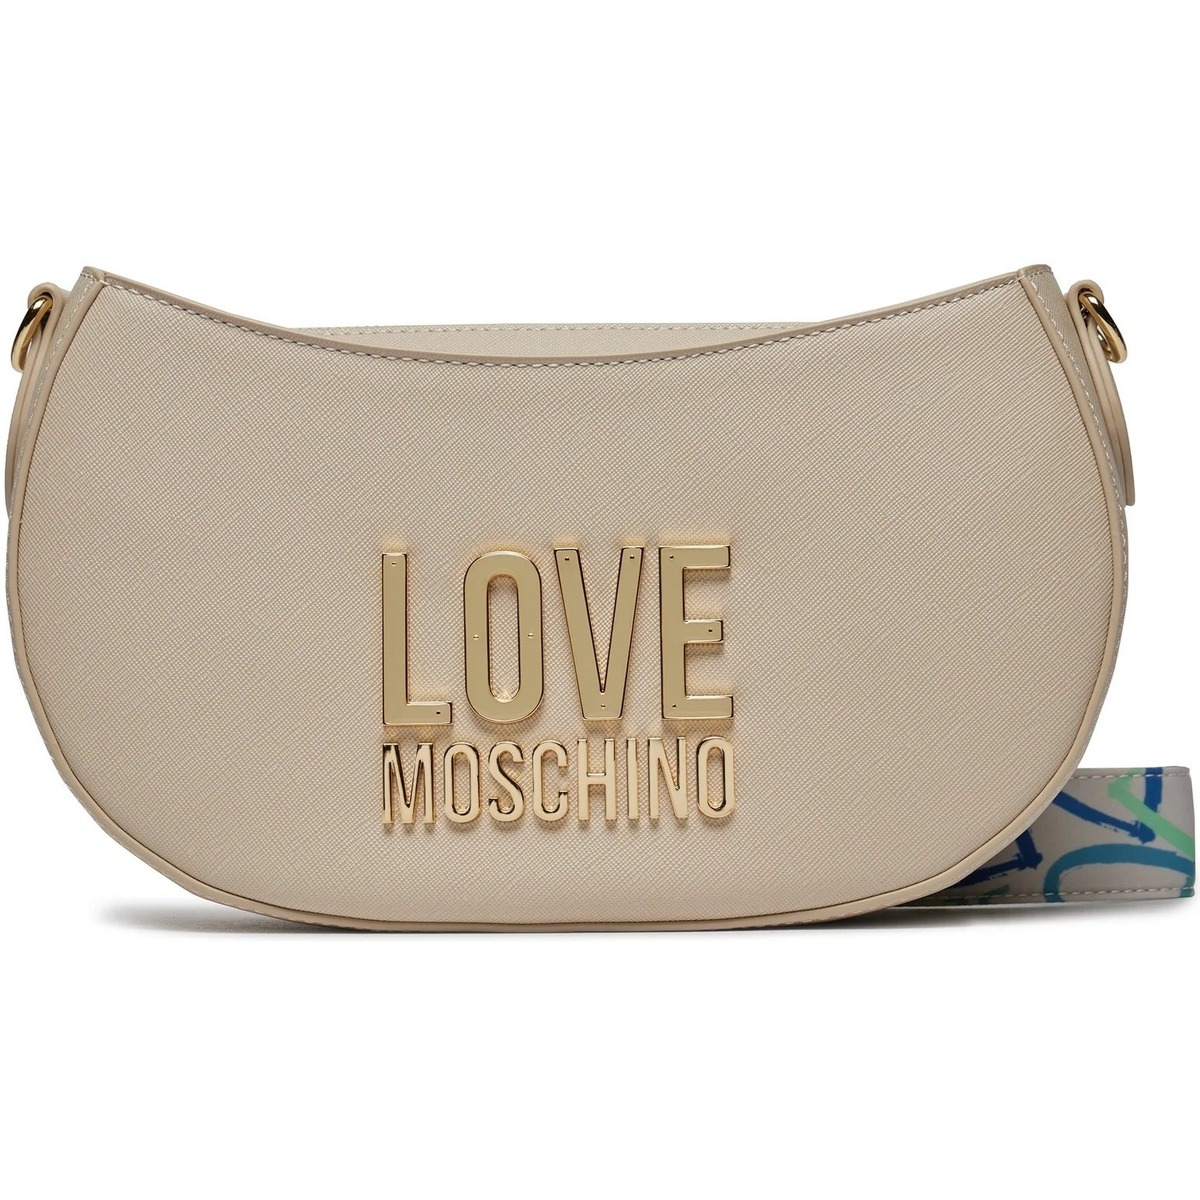 Borse Donna Borse a mano Love Moschino jc4212pp1ilq-111a Bianco